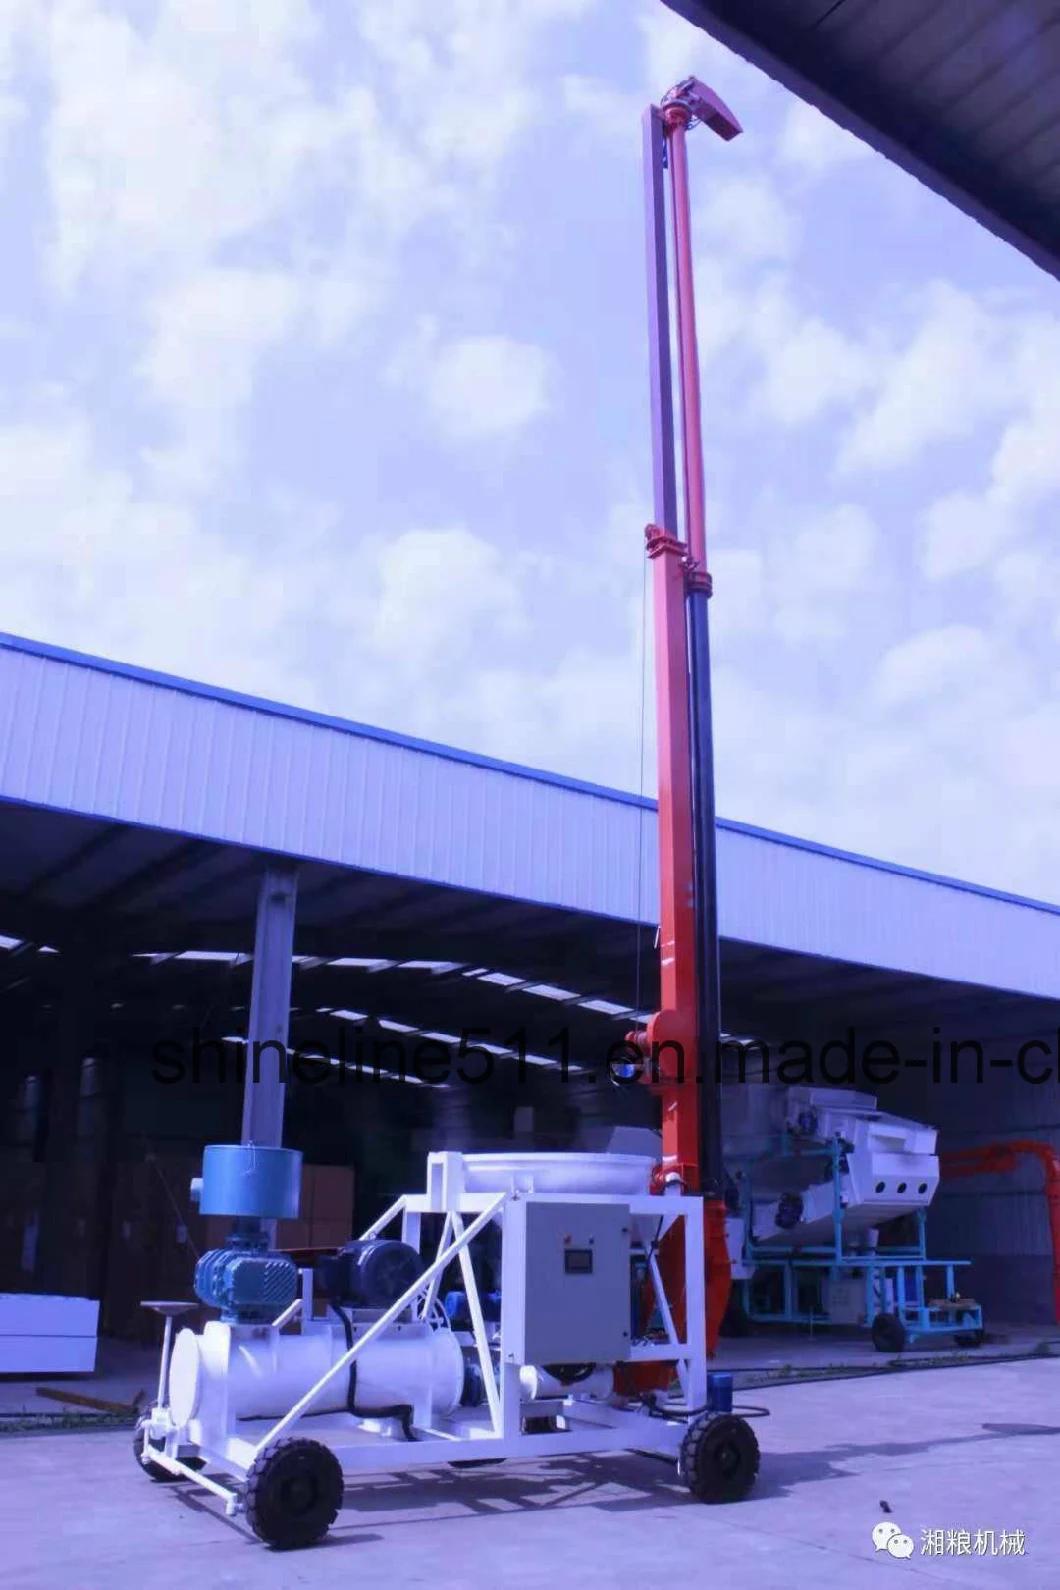 Standard Exportatiion Packing Heat Resistant Telescopic Conveyor Port Grain Unloader